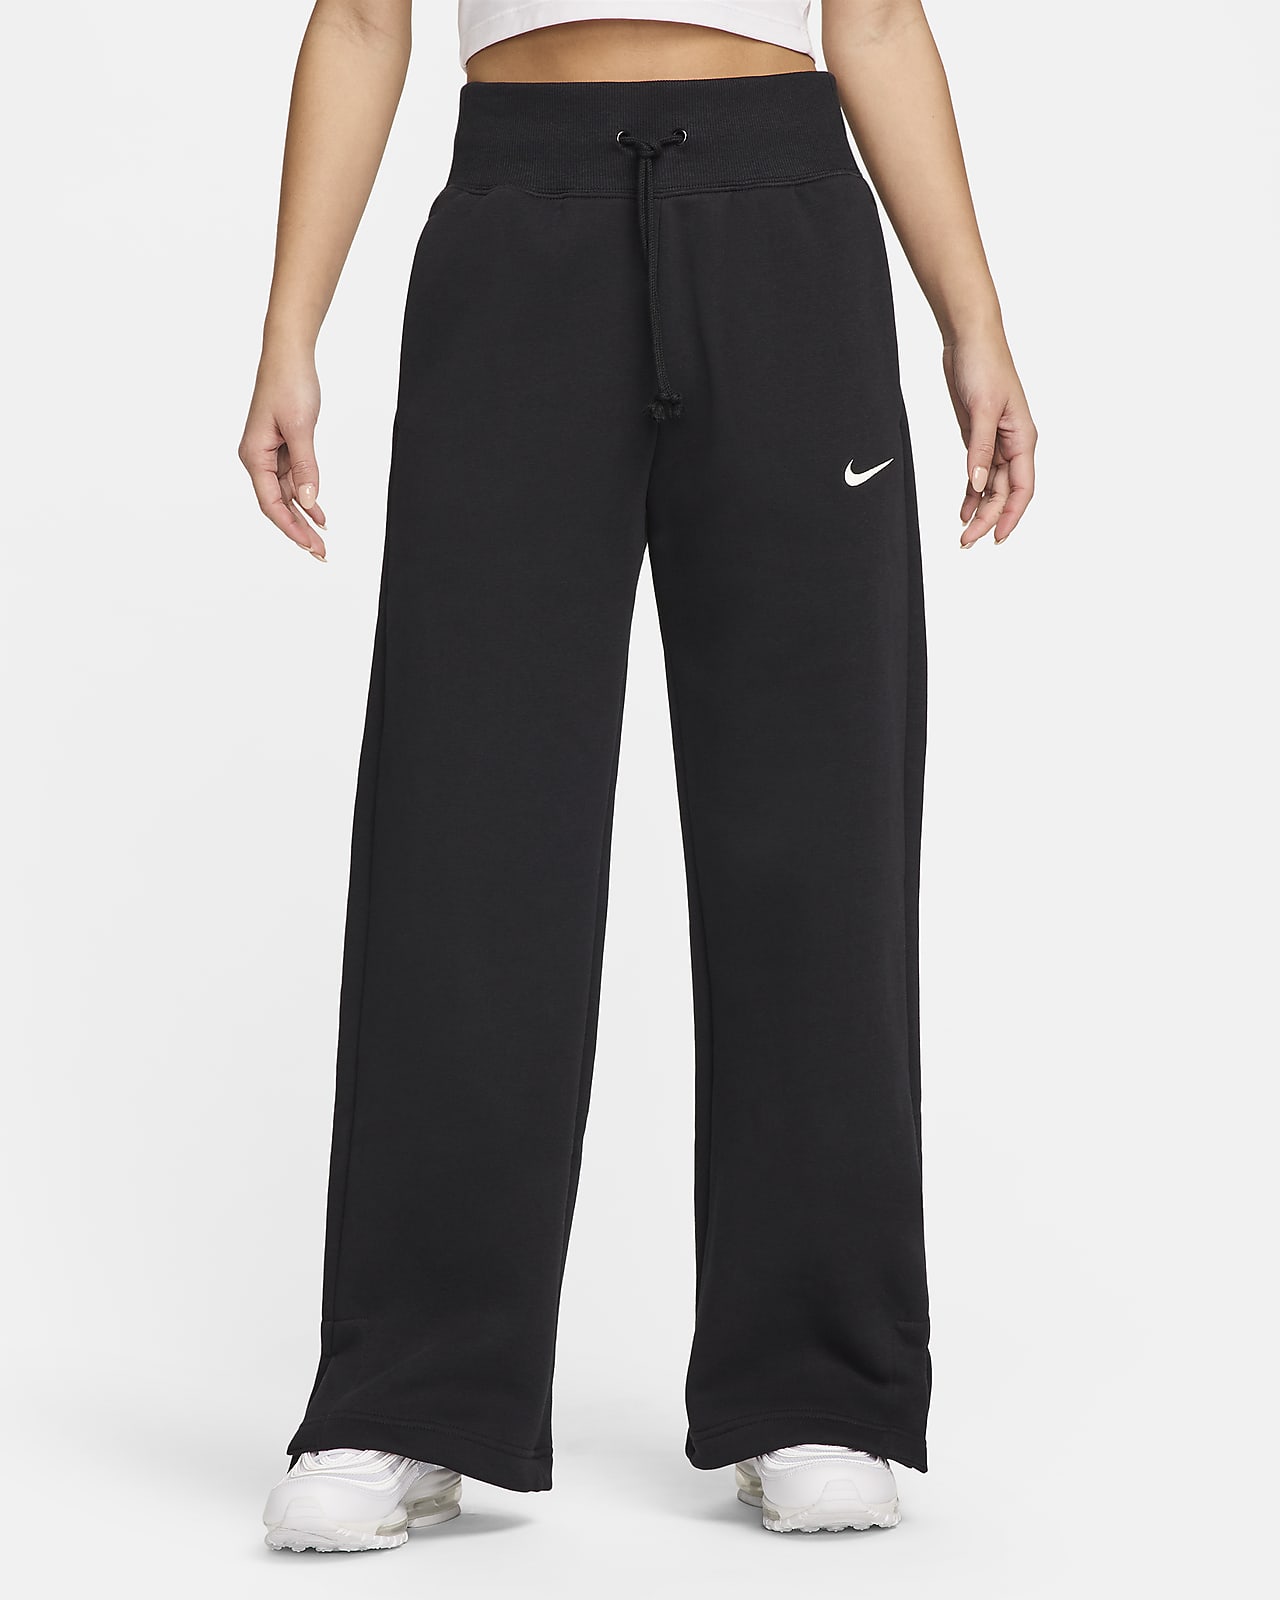 Nike Sportswear Phoenix Fleece Women's High-Waisted Sweatpants. Nike JP